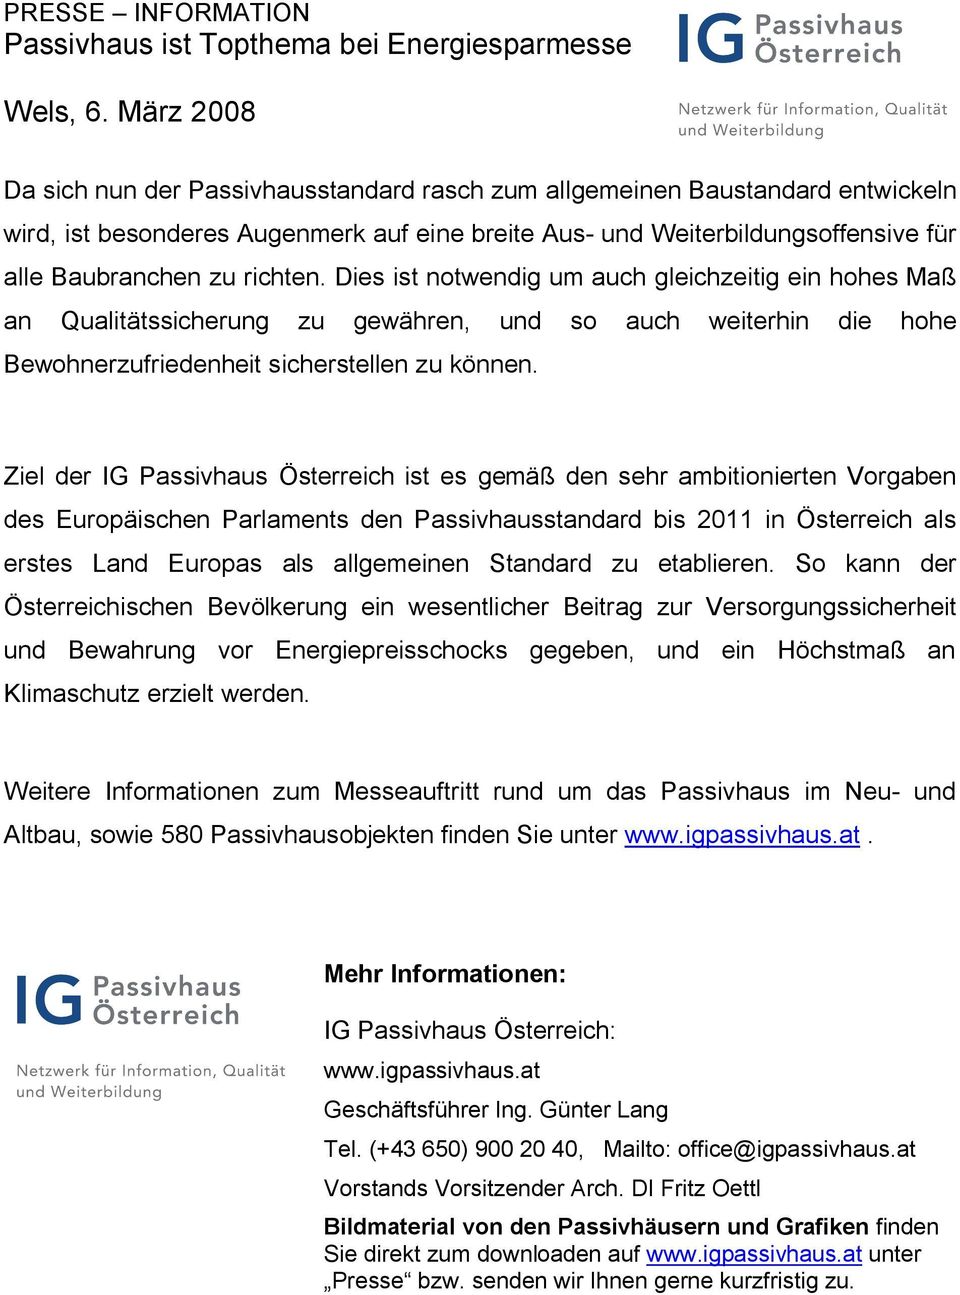 Ziel der IG Passivhaus Österreich ist es gemäß den sehr ambitionierten Vorgaben des Europäischen Parlaments den Passivhausstandard bis 2011 in Österreich als erstes Land Europas als allgemeinen